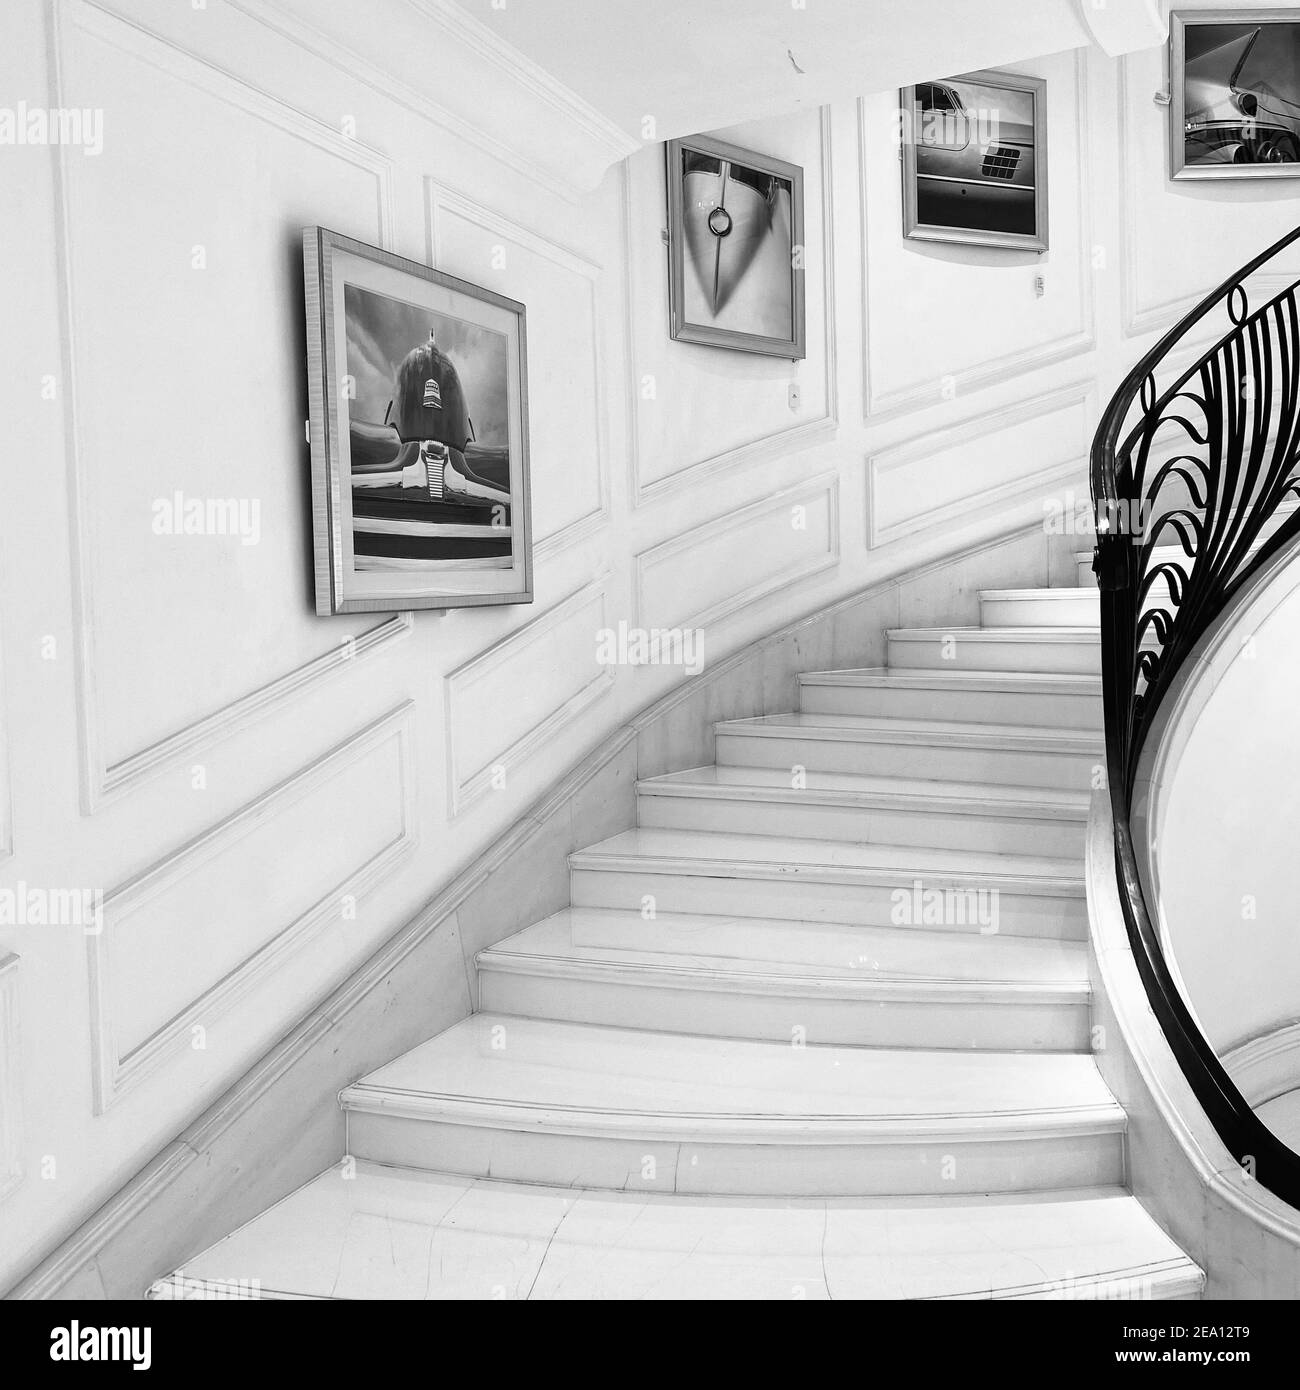 Décoration intérieure noire et blanche du couloir. Escalier avec escalier en marbre et barres d'appui forgées. Photos de certaines pièces de voiture aléatoires sur le mur Banque D'Images